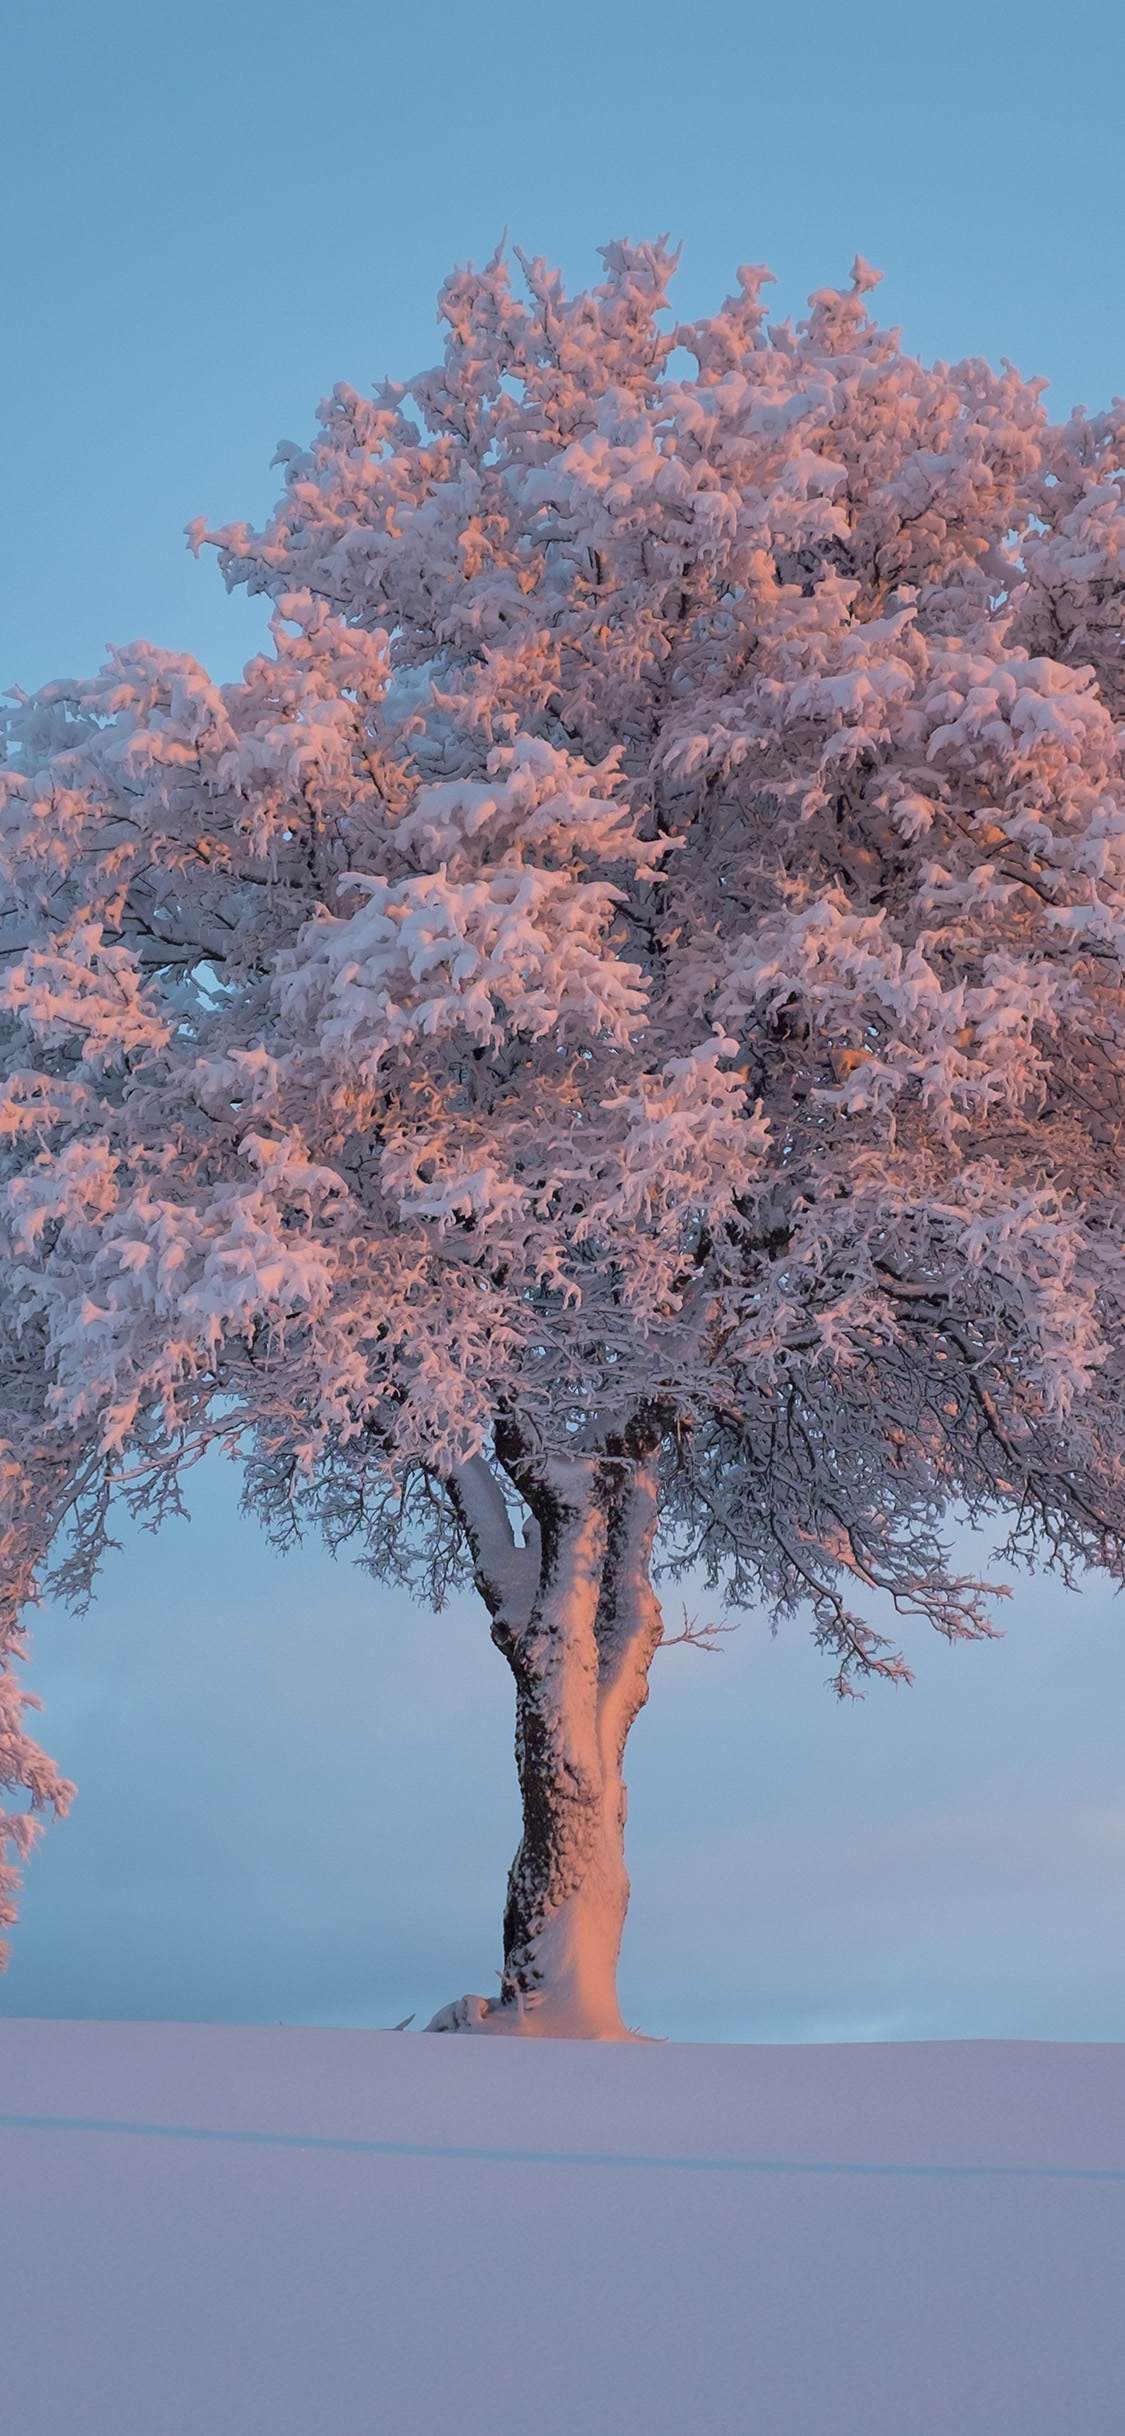 雪地中屹立的一棵树 树上挂满雪 超美